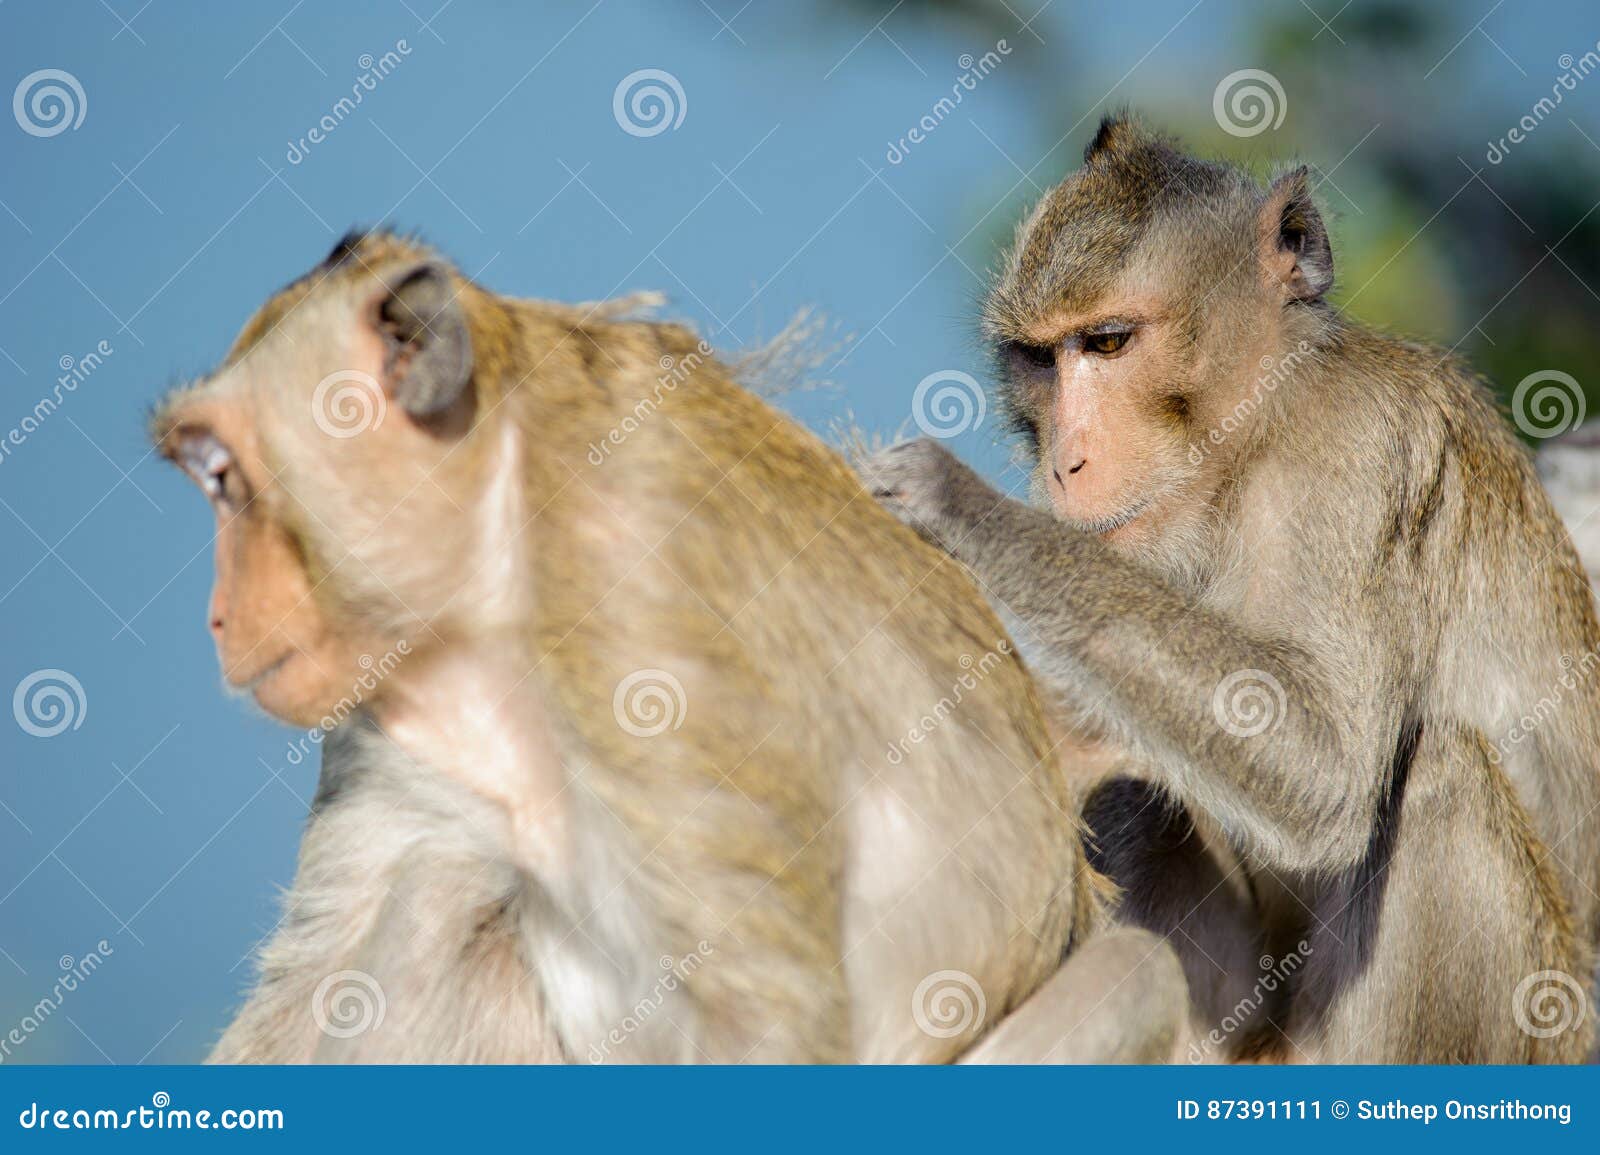 Naughty Monkey 6 stock image. Image of monkey, naughty - 87391111